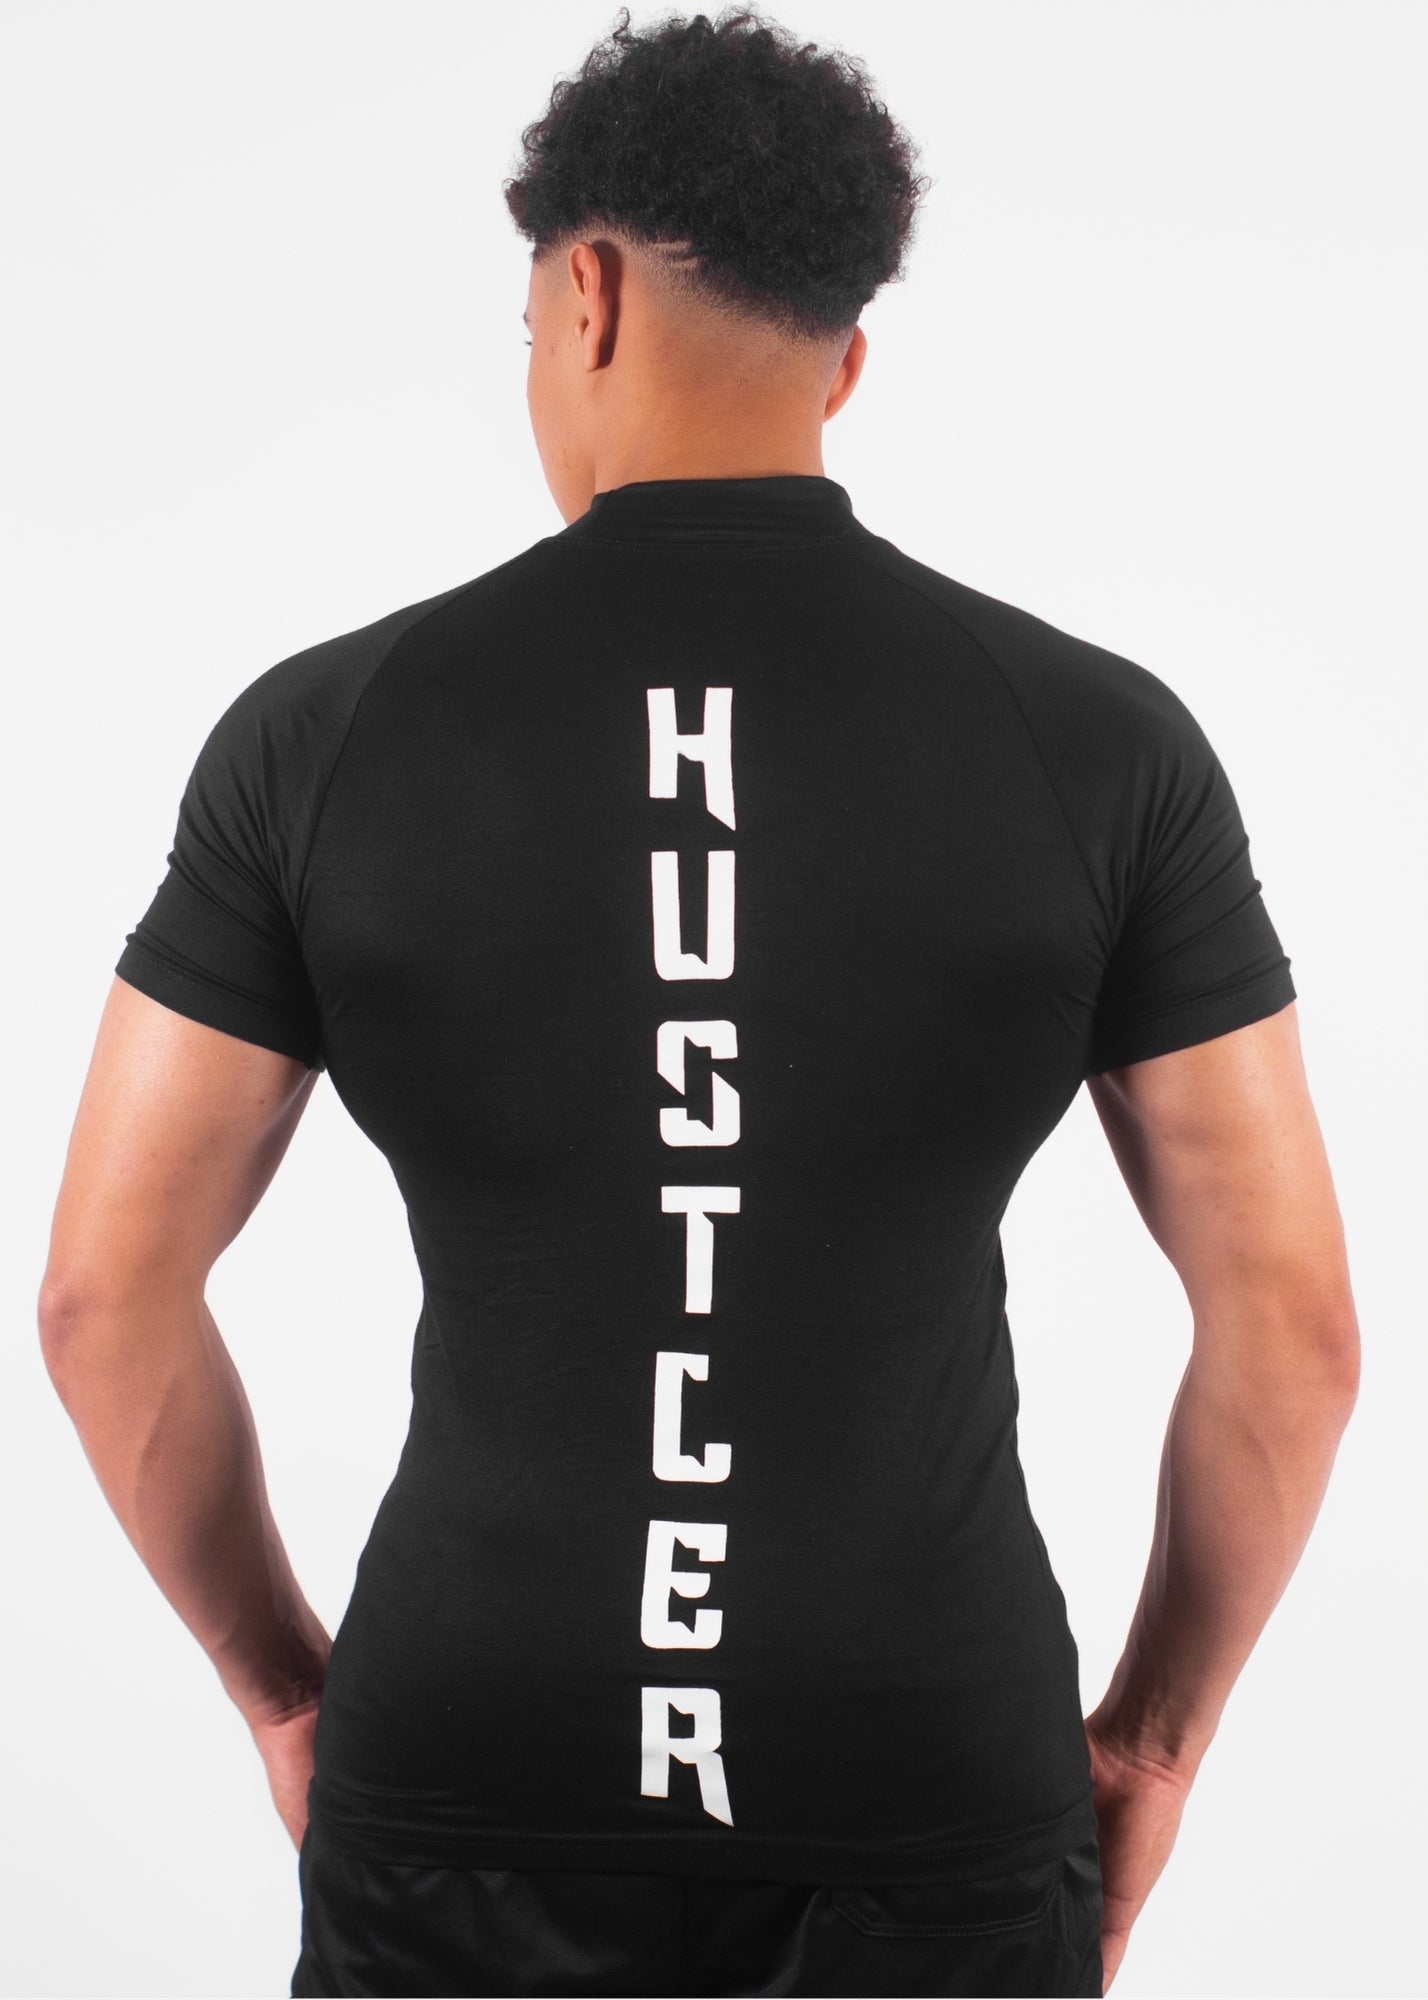 APEX™ Compression T-Shirt “HUSTLER” – BLACK 